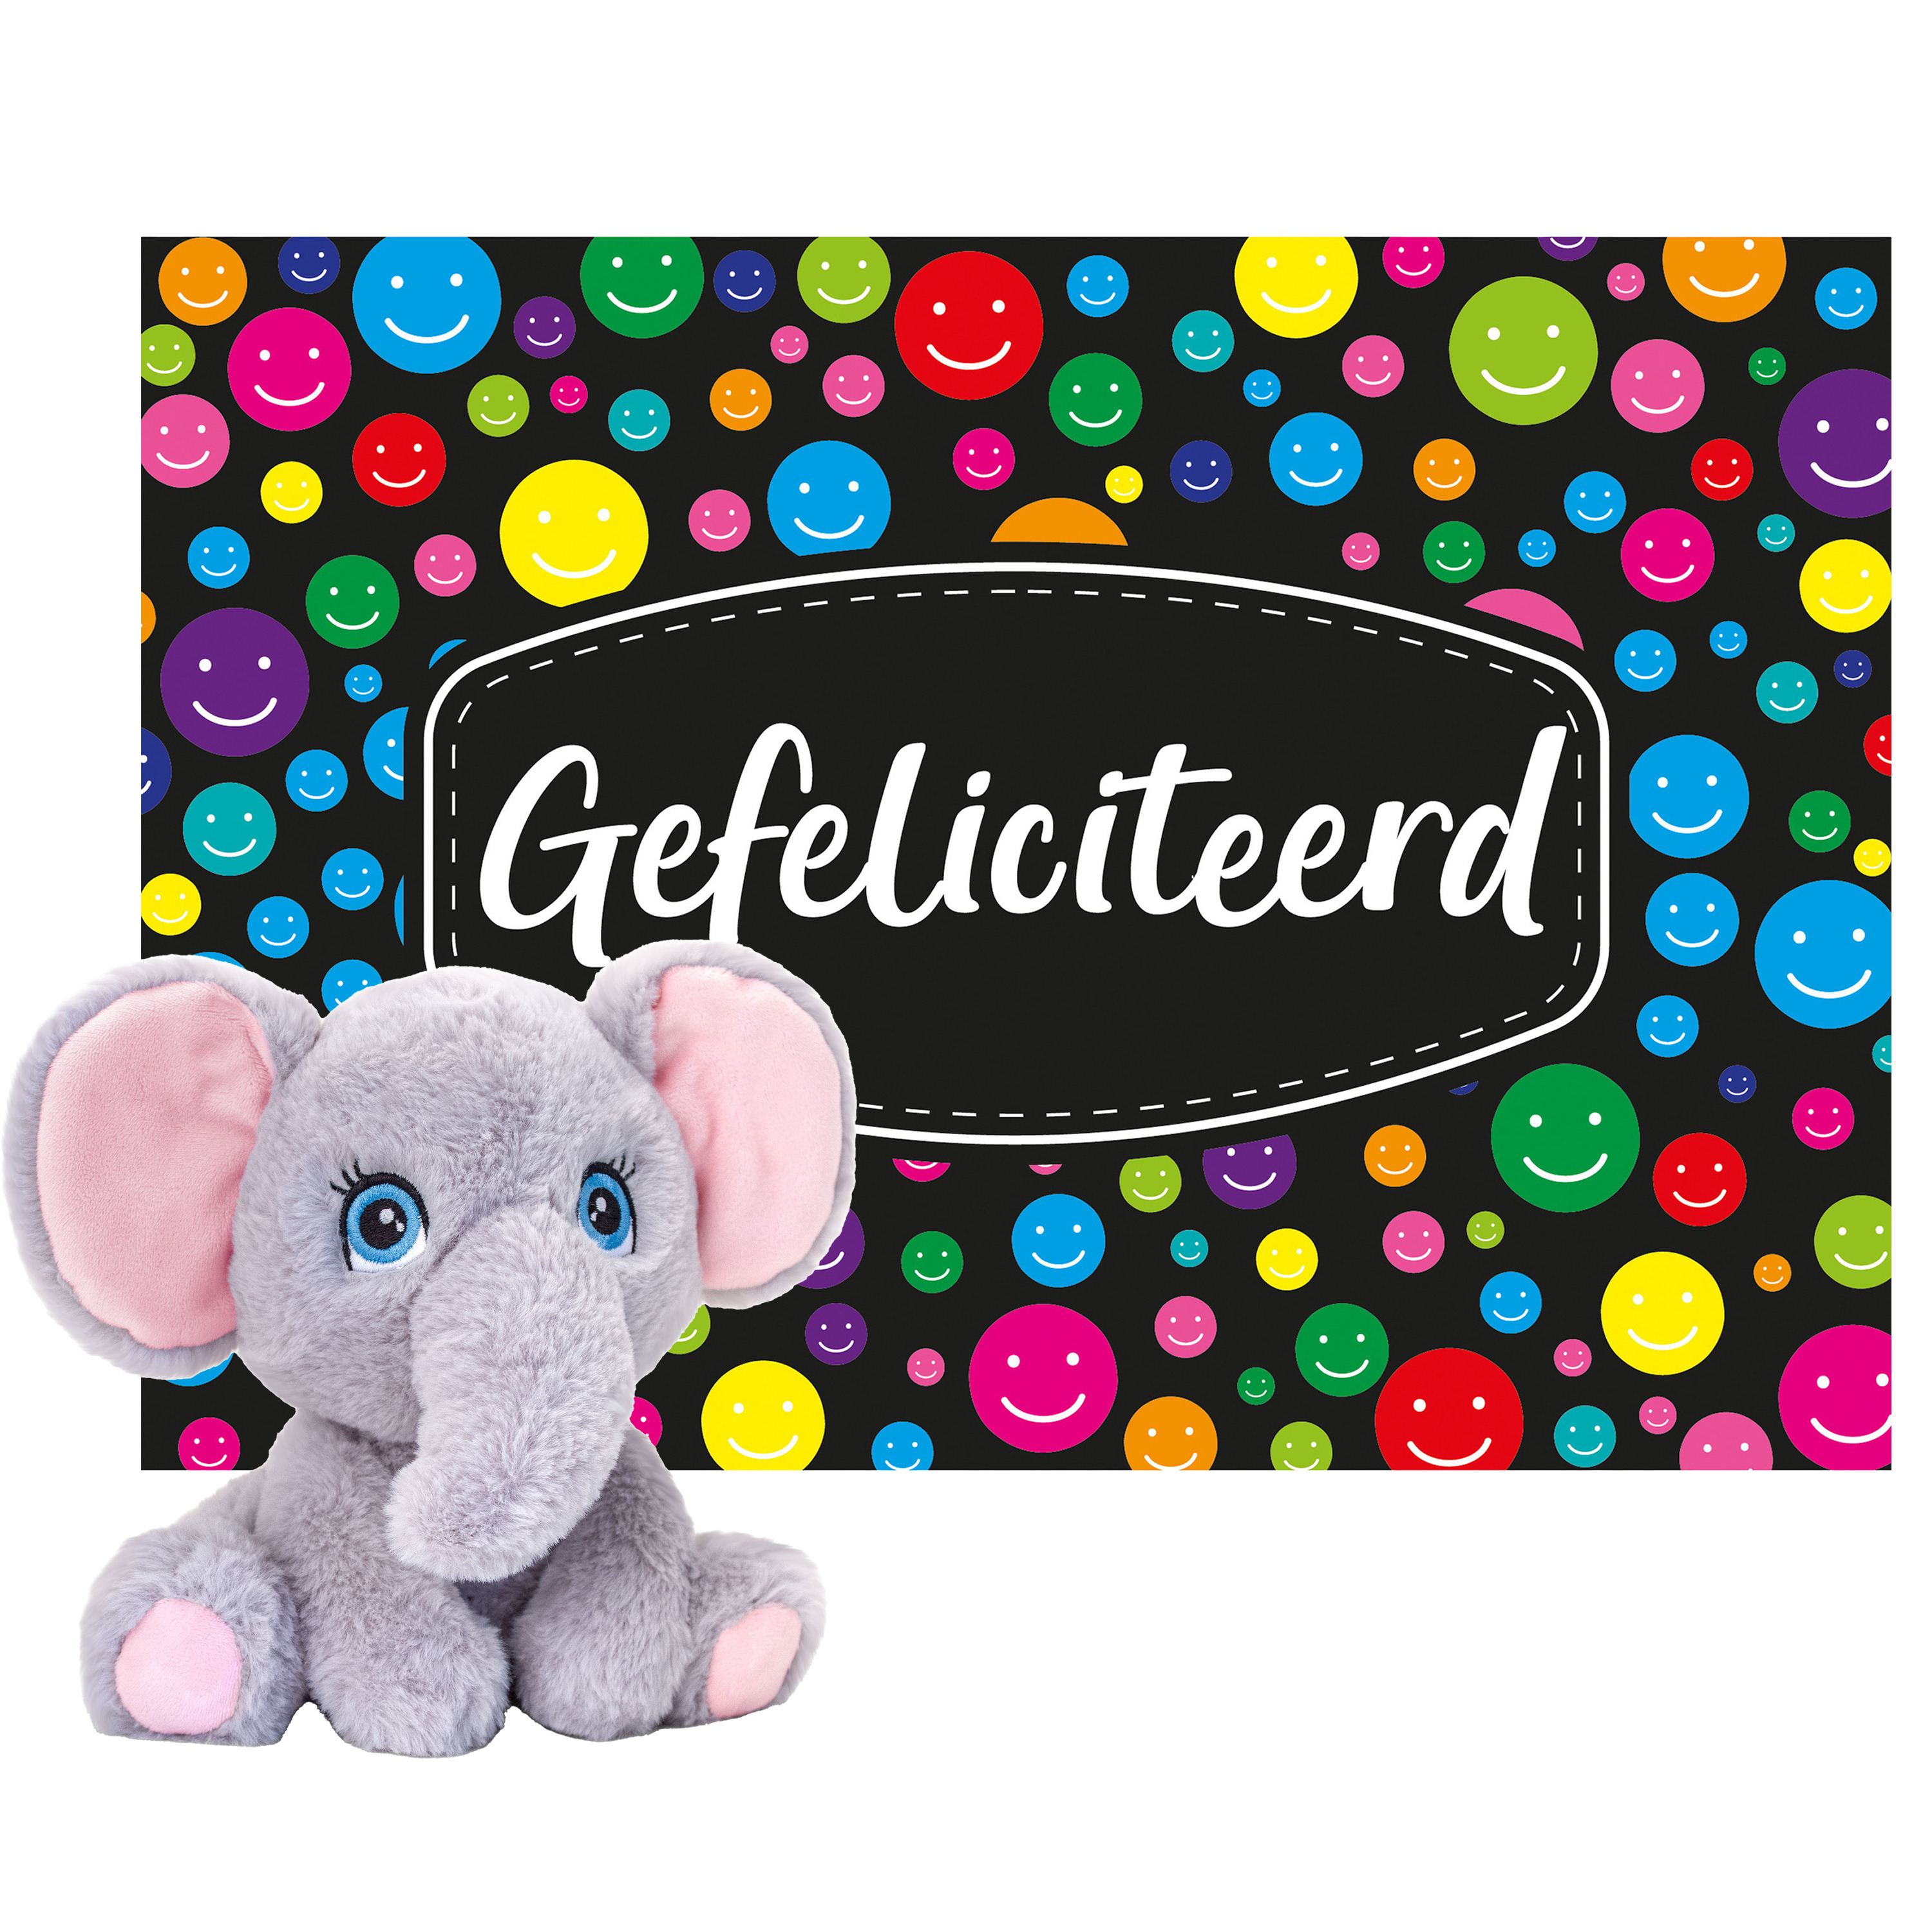 Keel toys - Cadeaukaart Gefeliciteerd met knuffeldier olifant 25 cm -